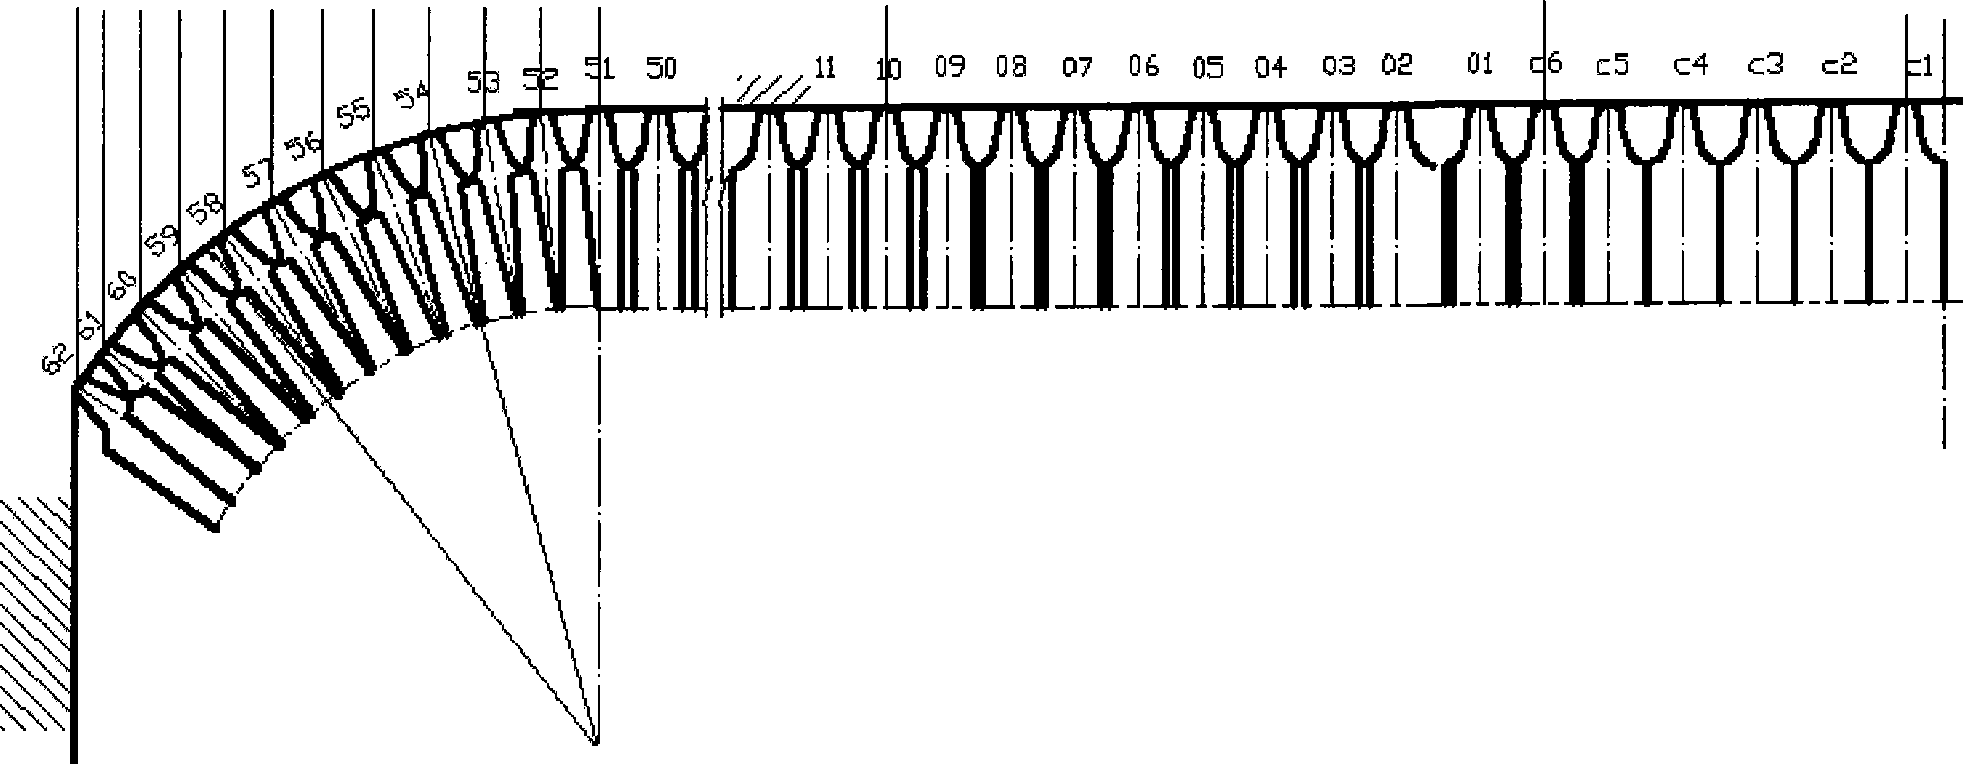 Balancing arrangement method on cutterhead for positive hobbing cutter and transition hobbing cutter